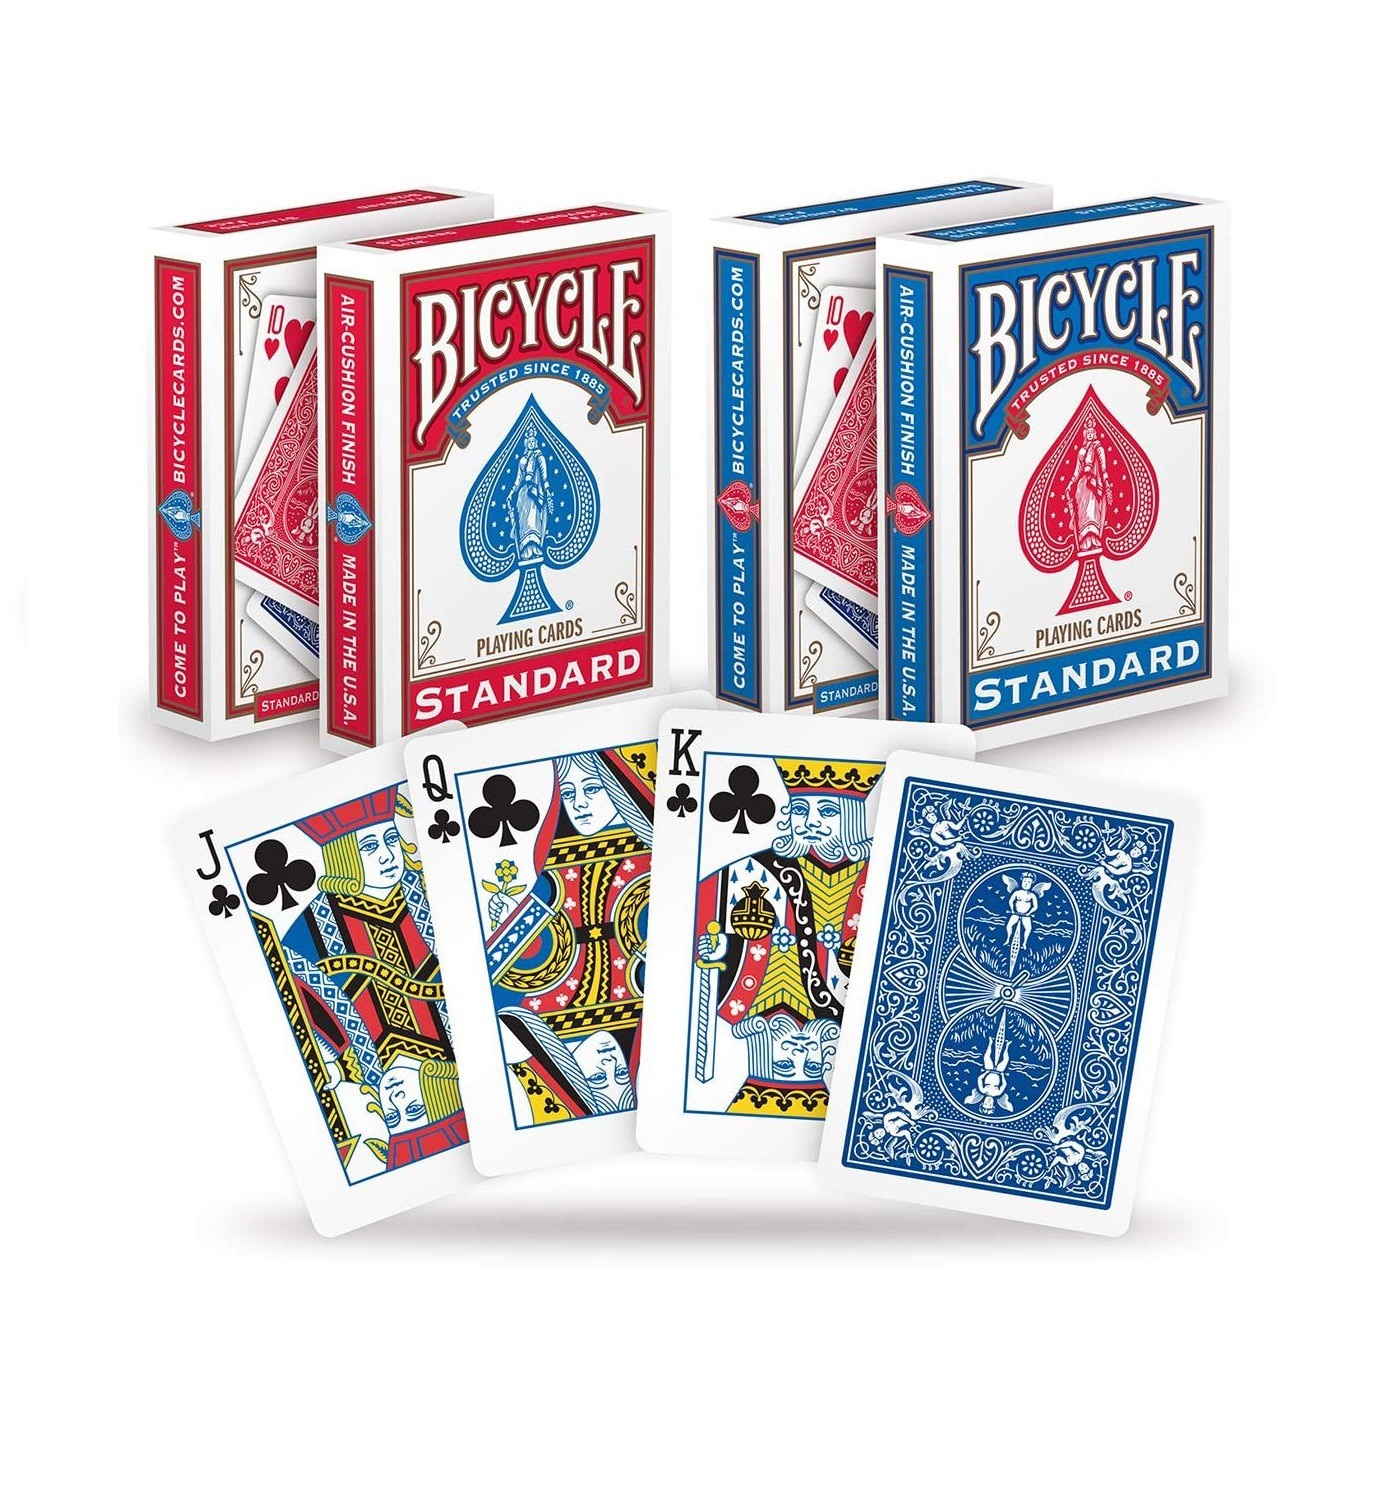 BICYCLE 美國製808標準專業撲克牌，美國家喻戶曉的撲克牌領導品牌，空氣氣墊(air-cushion)紙牌表面處理，讓您的洗牌玩牌操控隨心所欲。